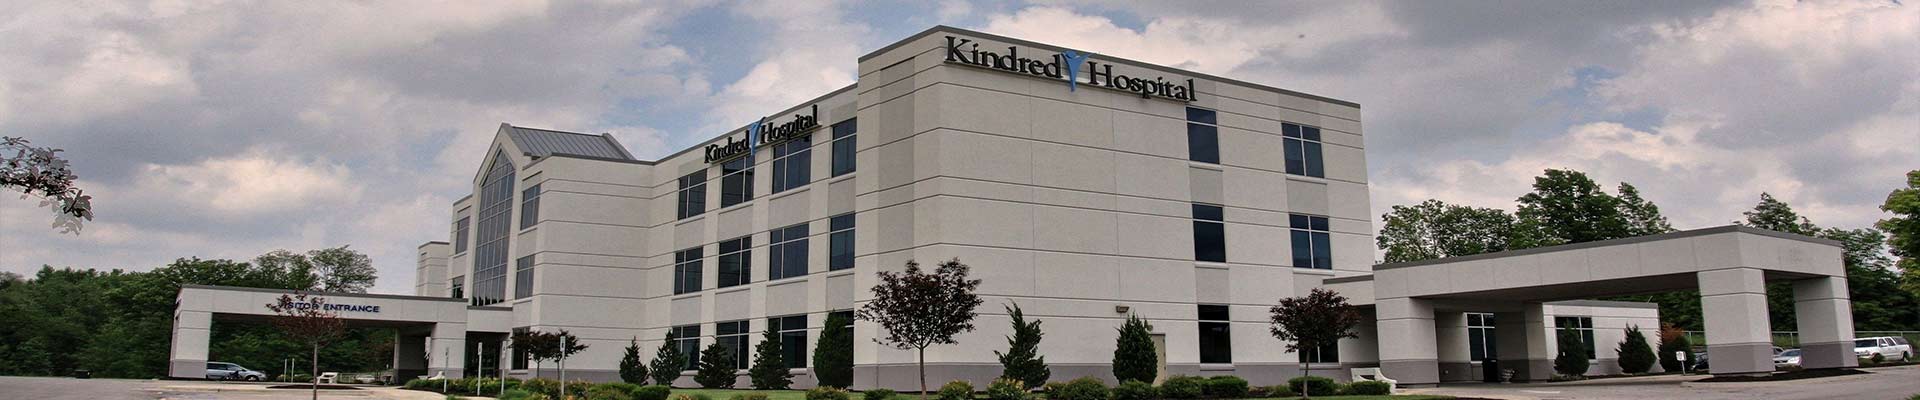 Kindred Hospital Northland